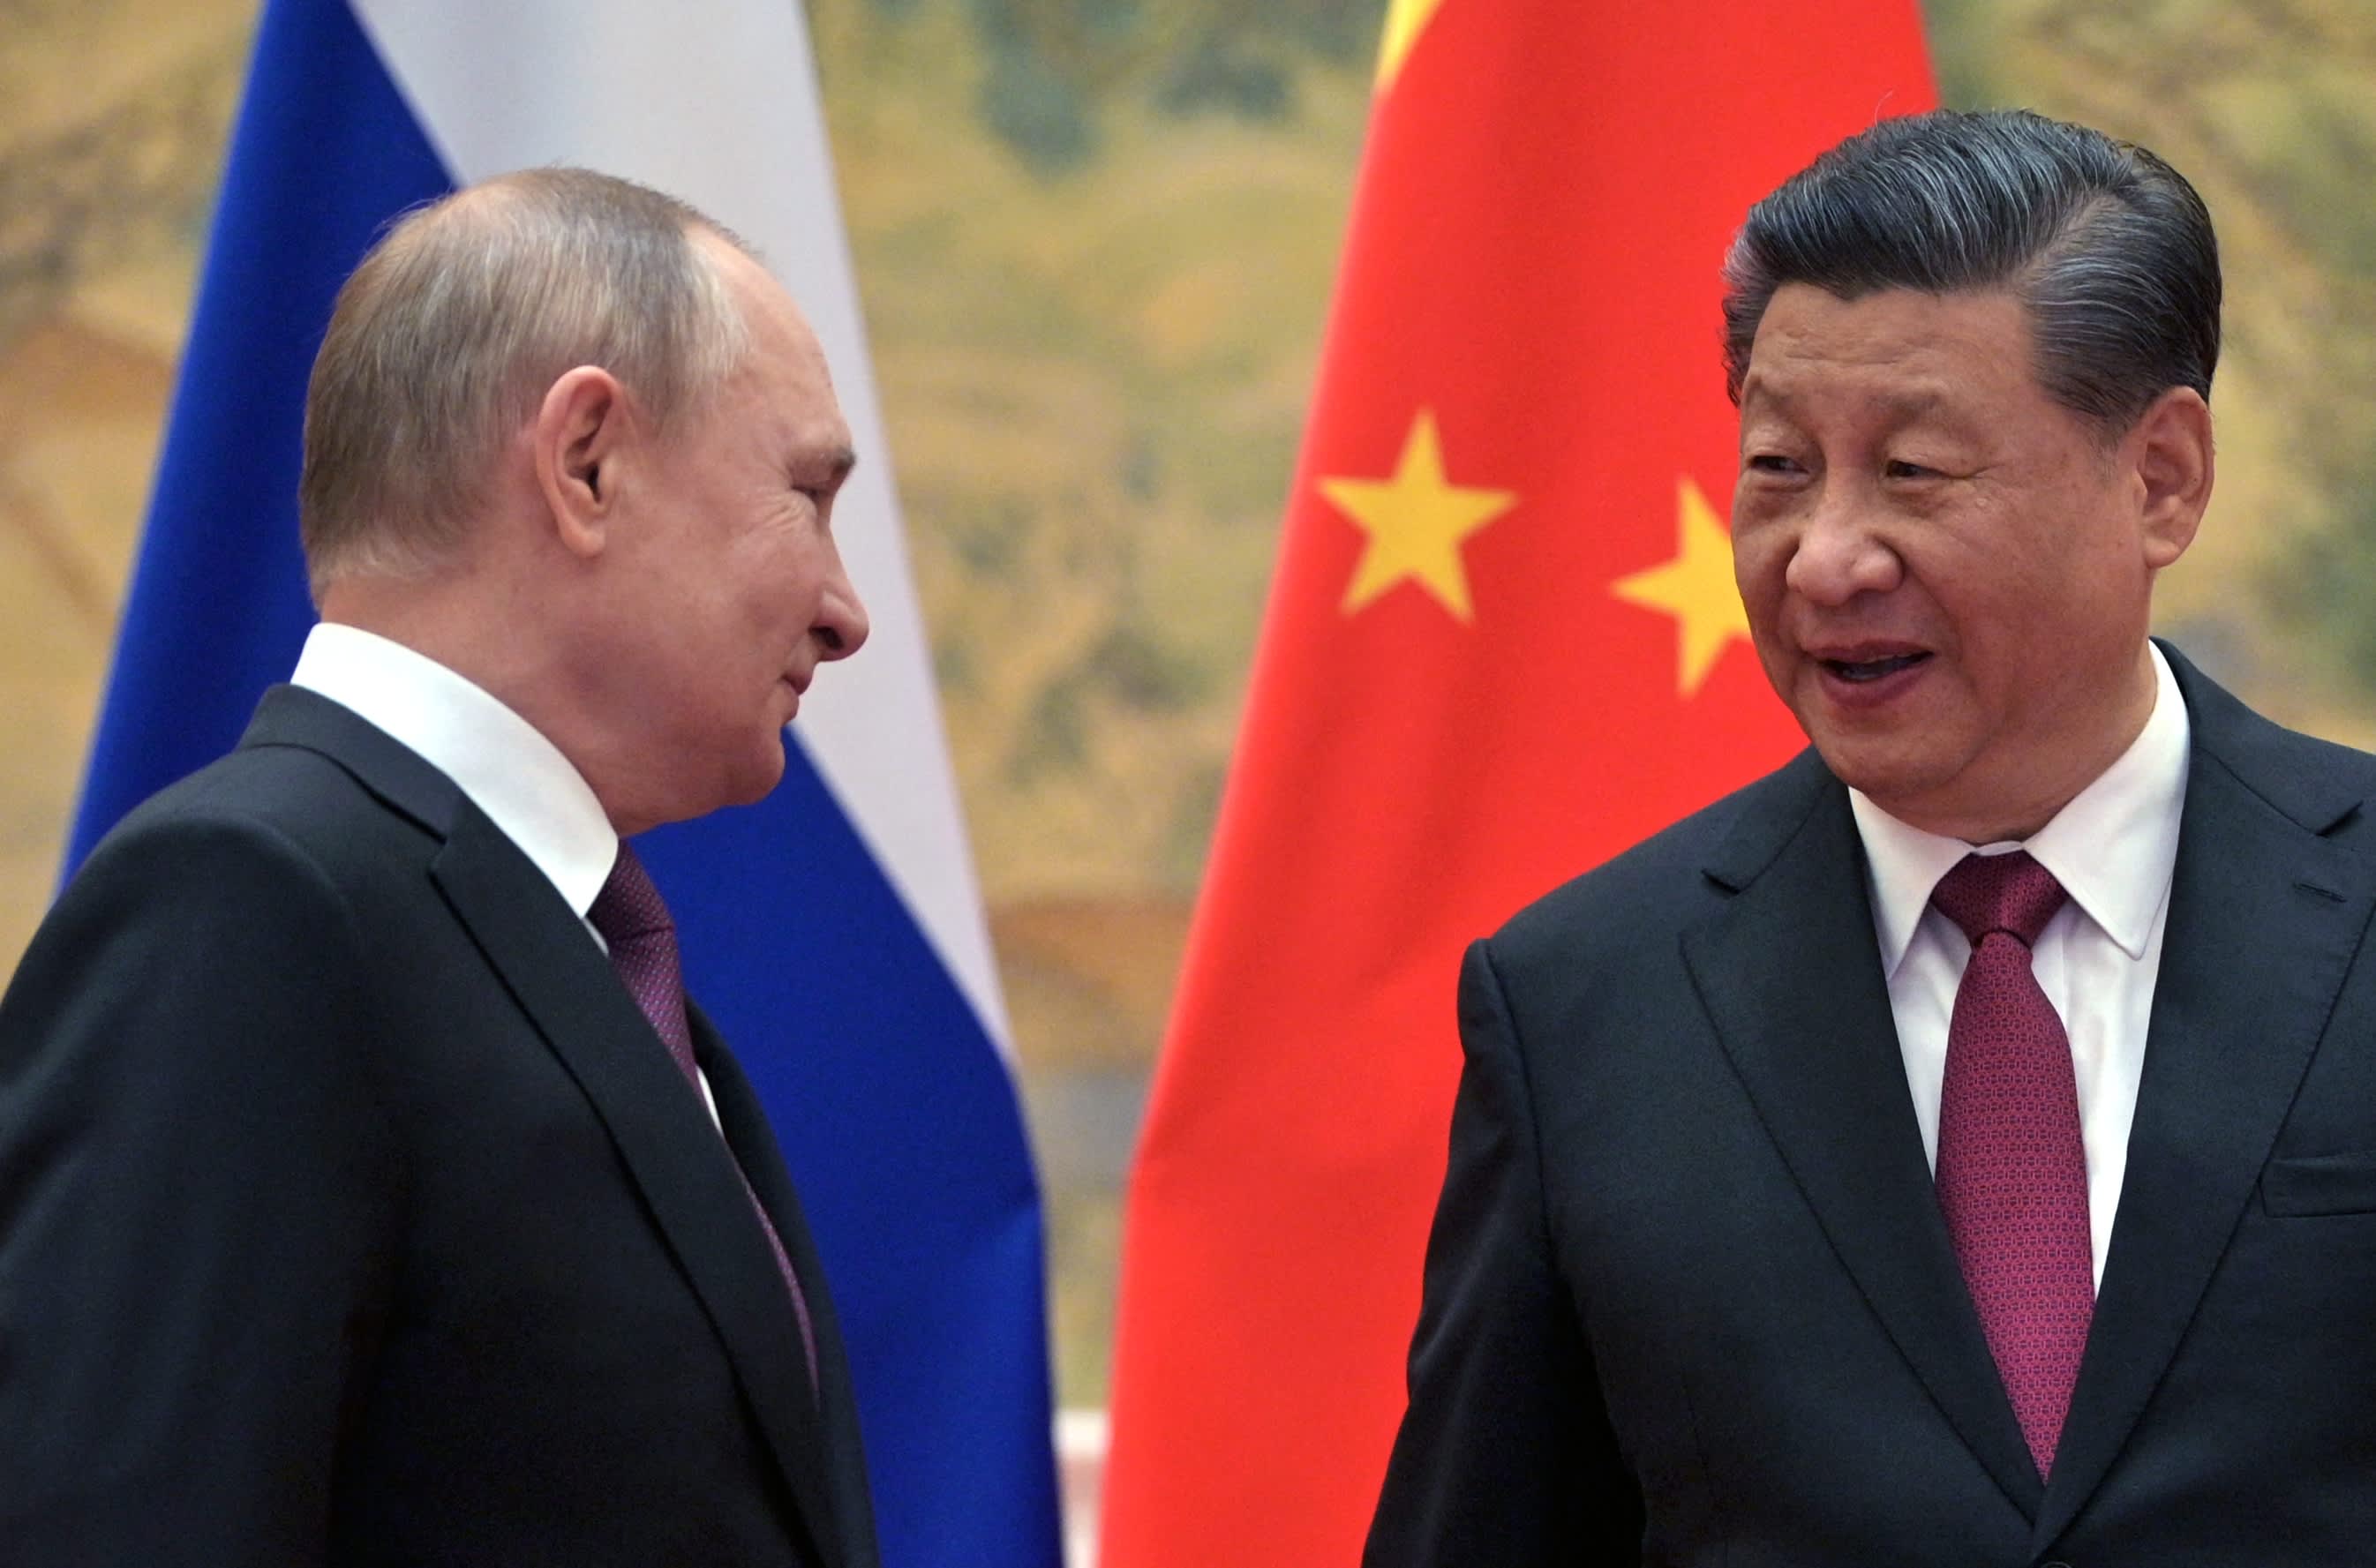 جامعة كولومبيا في الصين تساعد روسيا في تأثير العقوبات